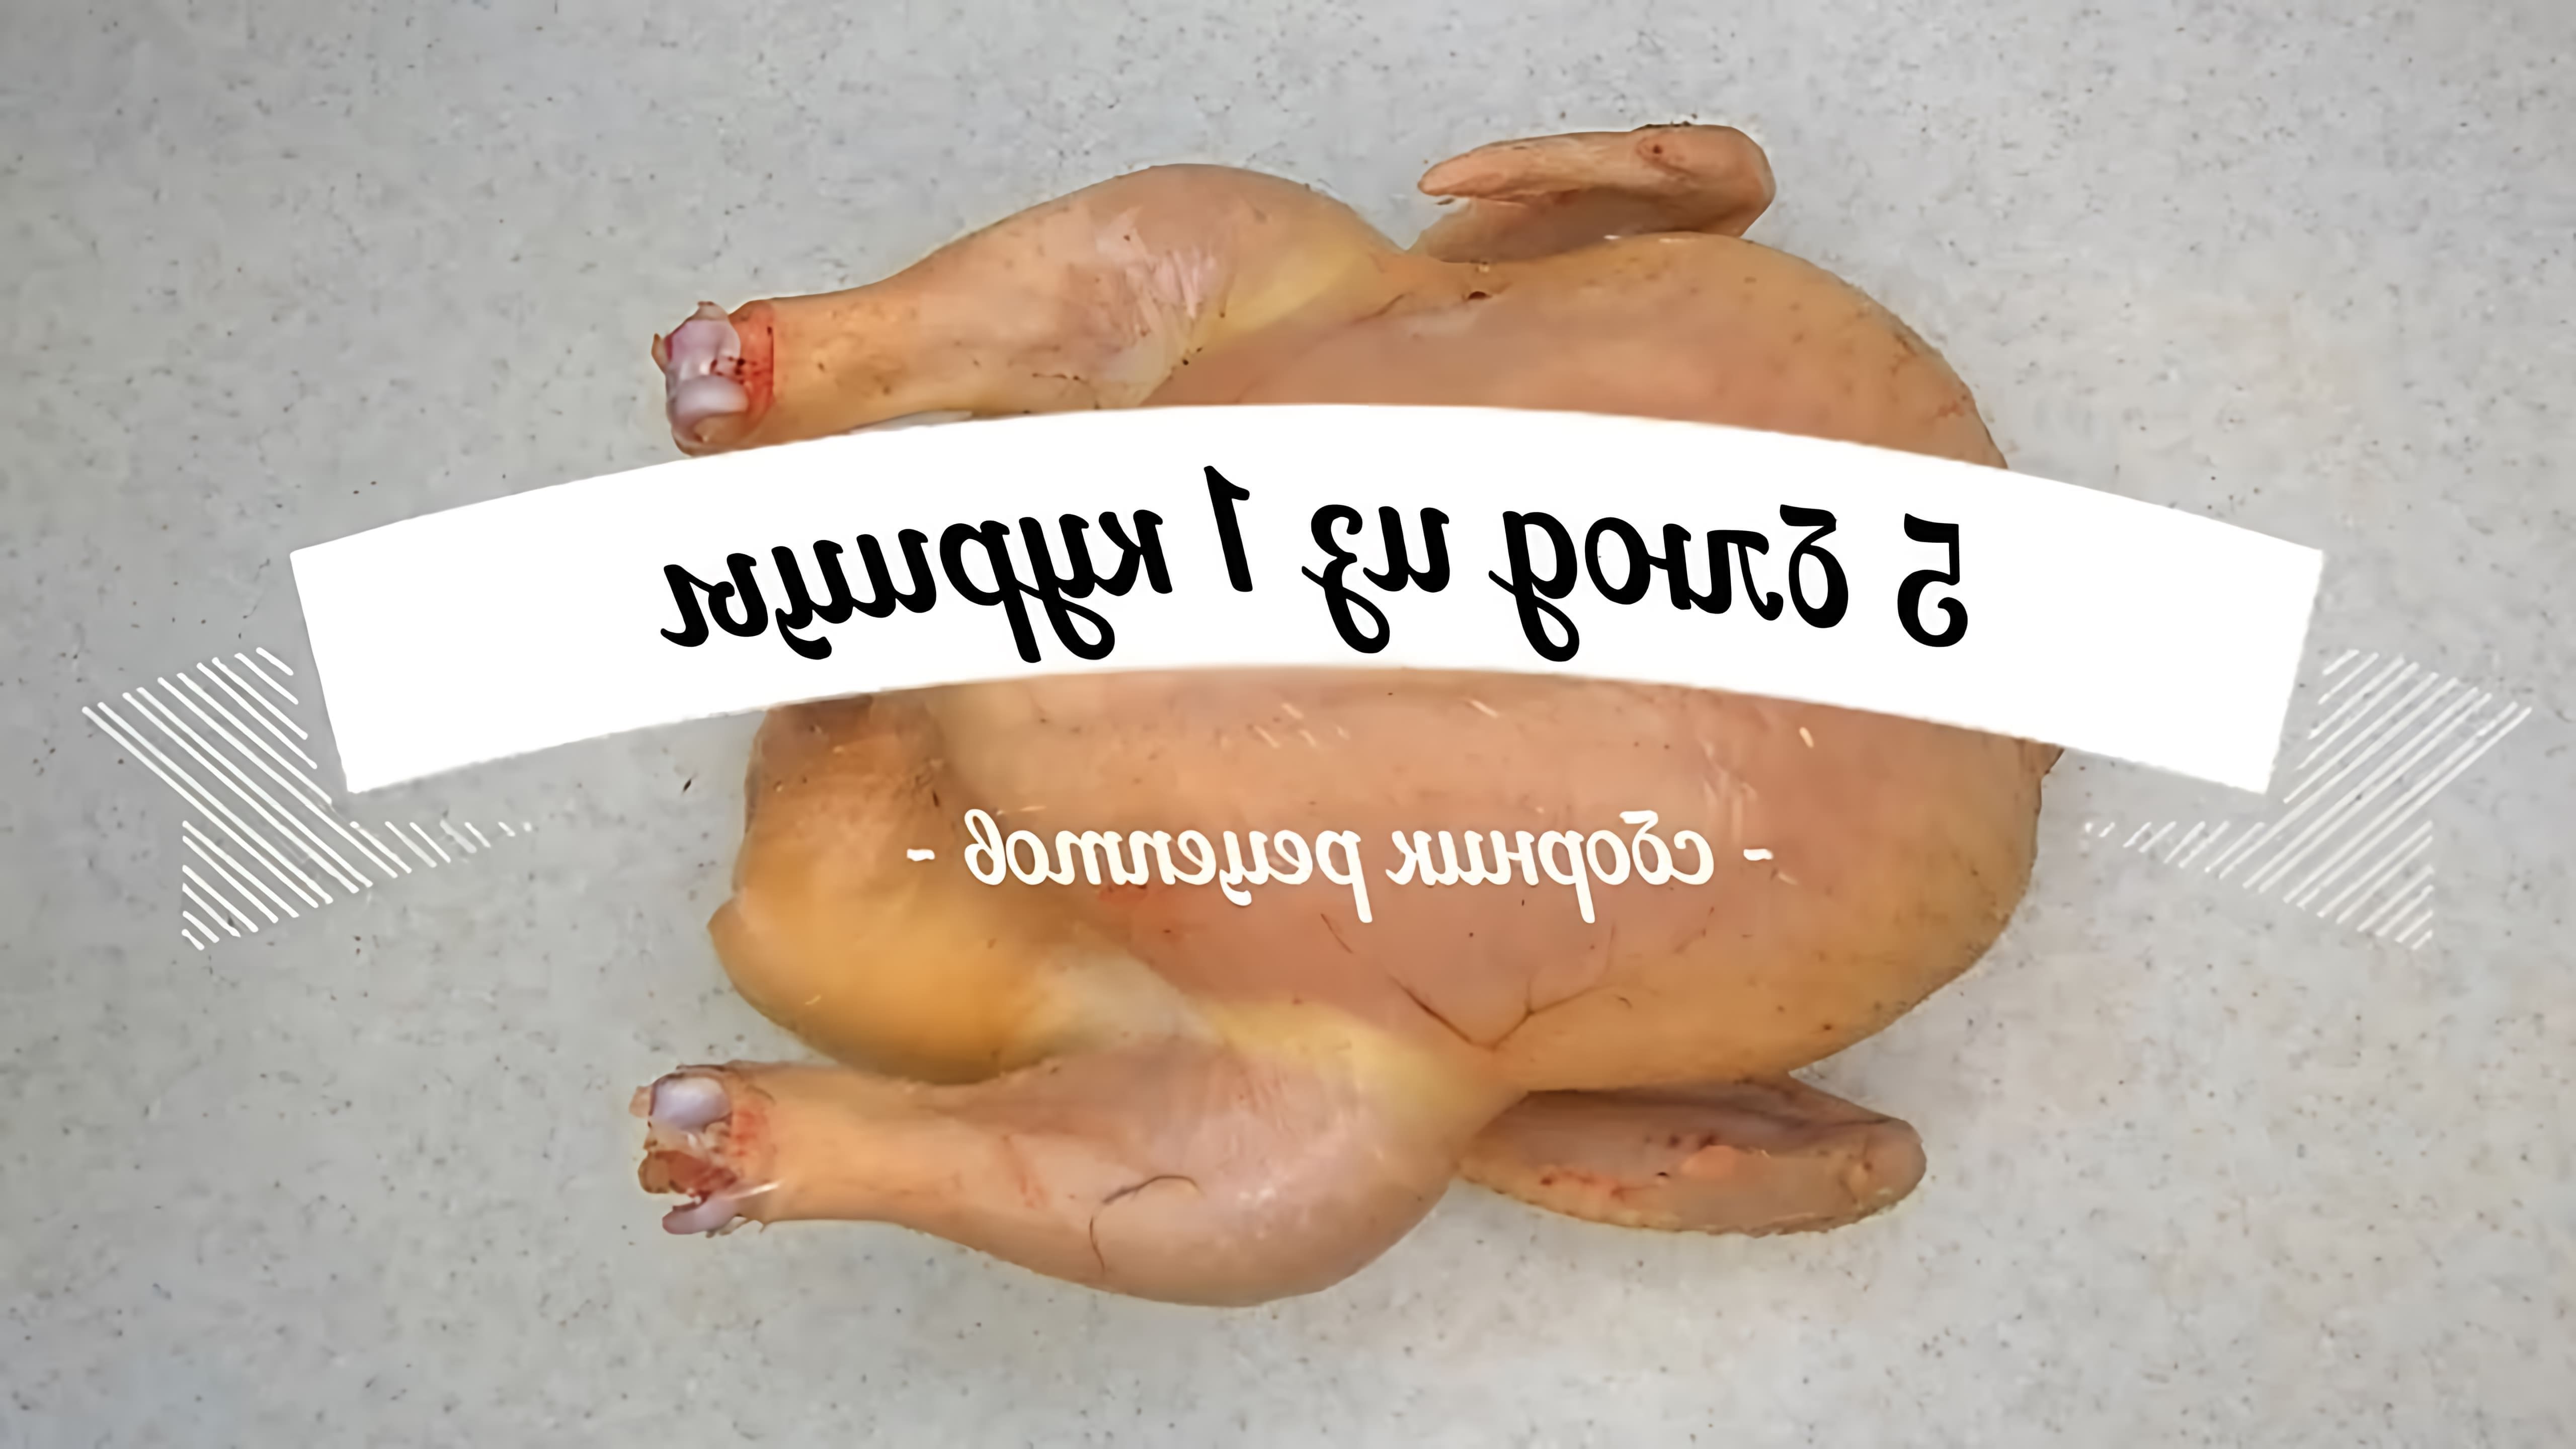 В этом видео-ролике будут представлены 5 простых и доступных рецептов блюд из курицы, которые можно приготовить без особых усилий